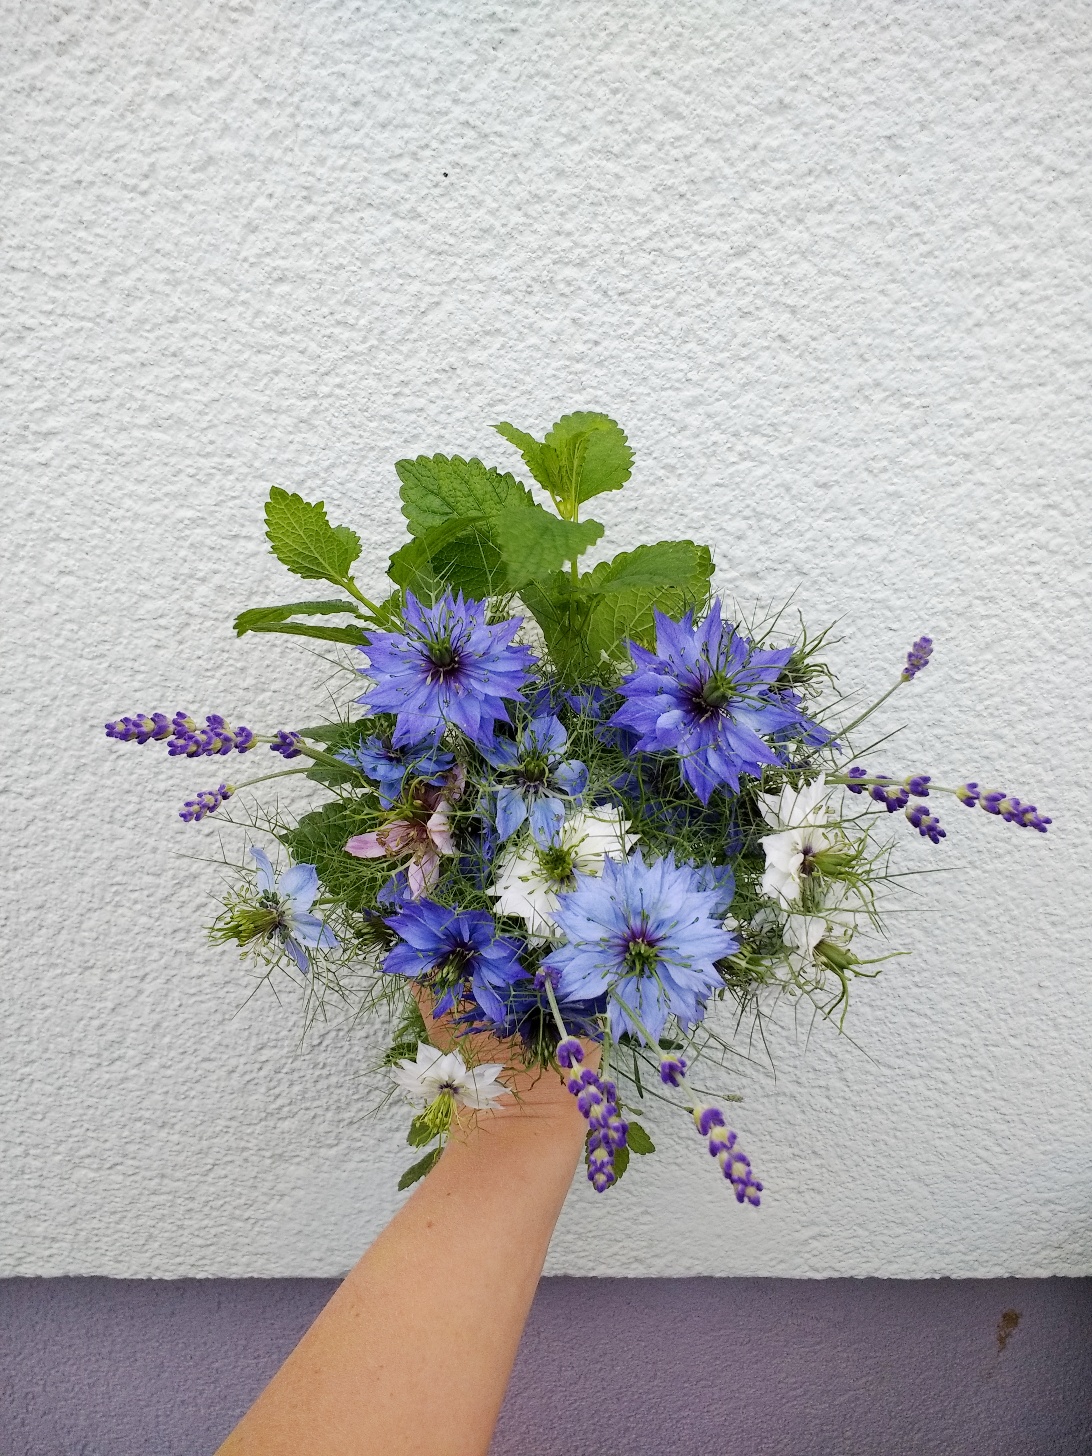 Blumenstrauß mit blauen Blumen: Jungfer im Grünen wächst im wilden Bauerngarten fröhlich und robust vor sich hin